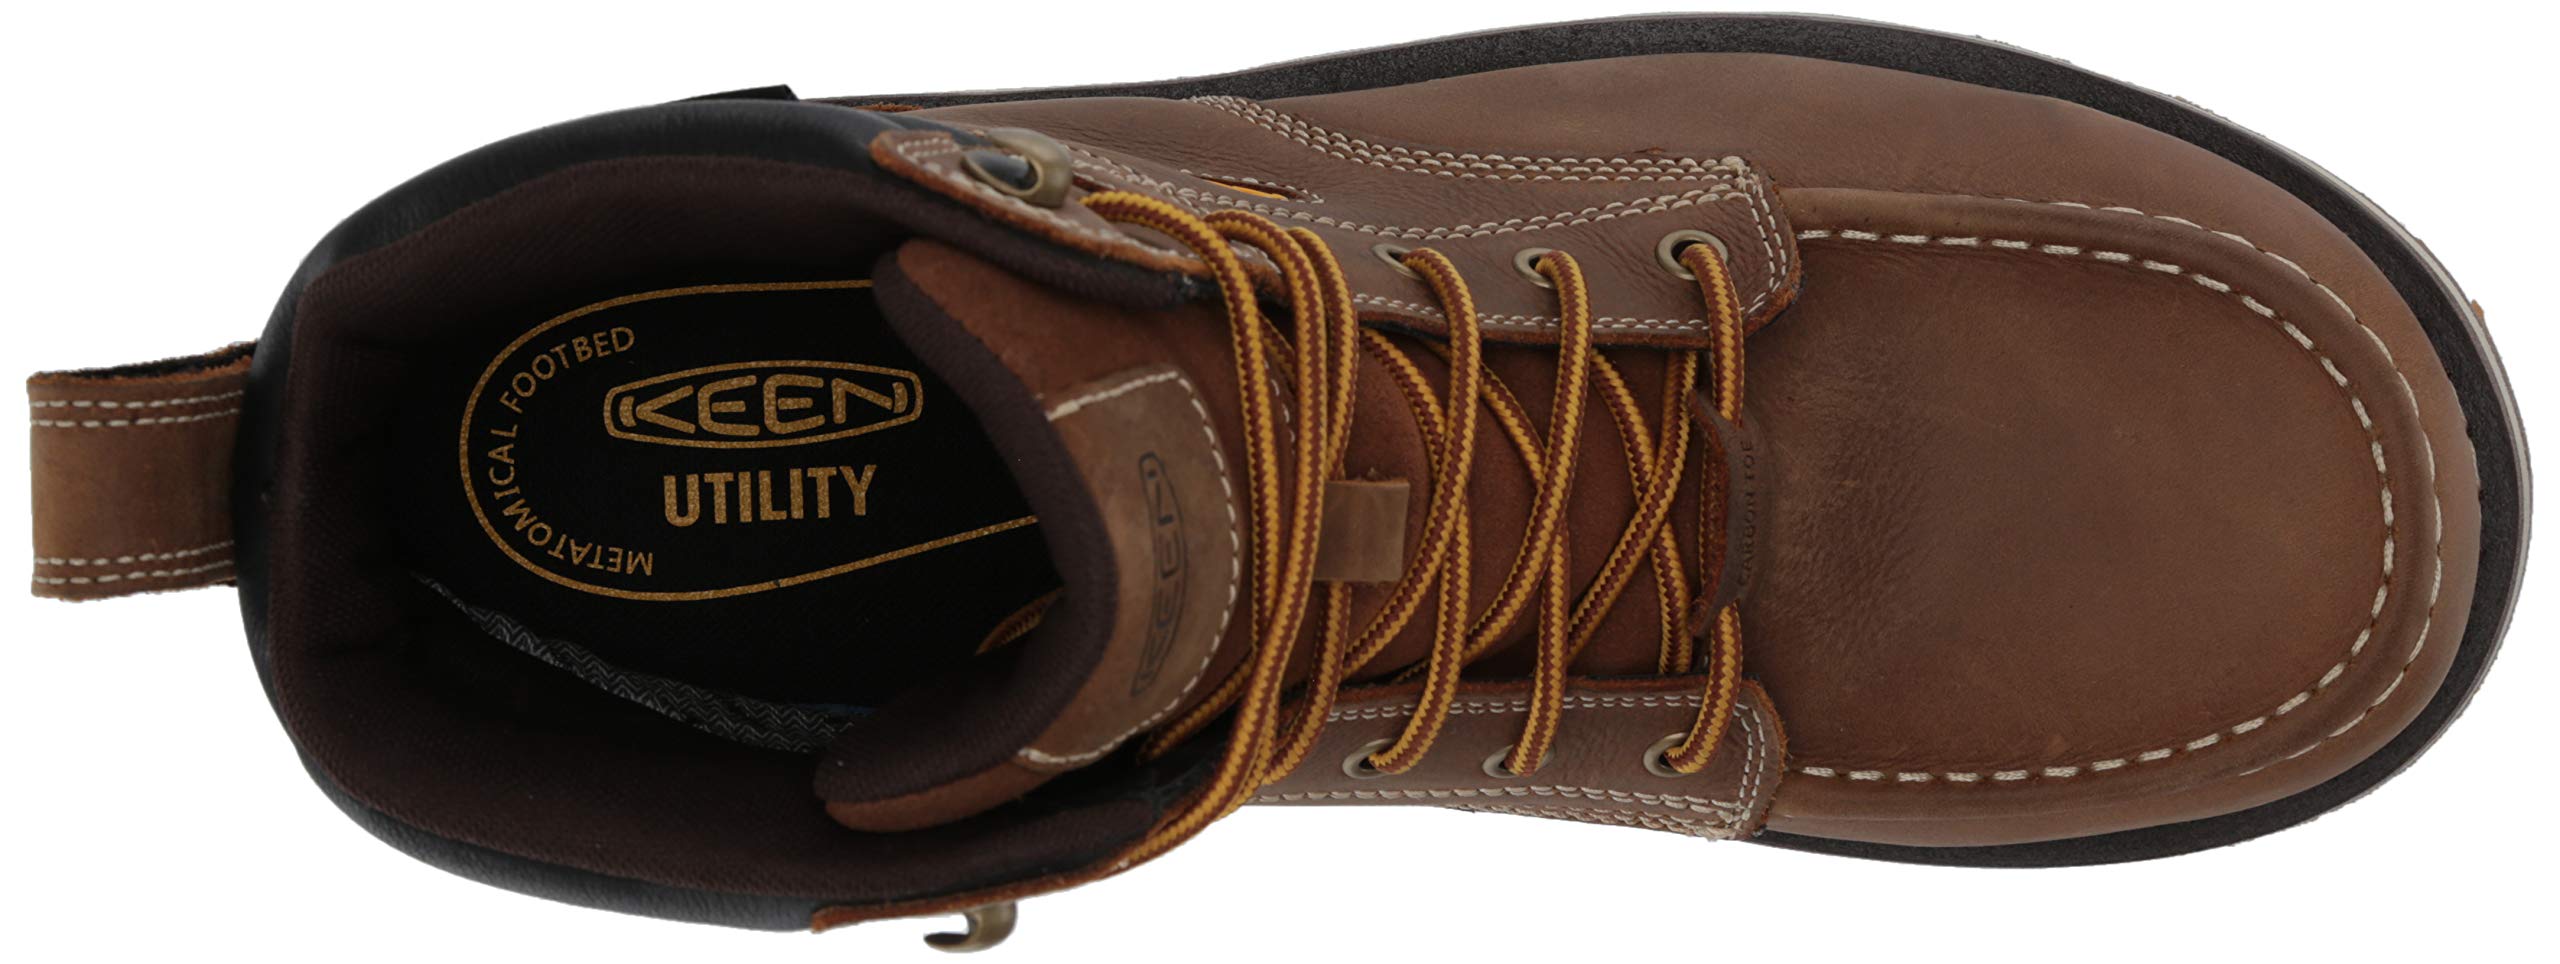 KEEN Utility Men's Cincinnati 6” Composite Toe Waterproof Wedge Work Boots, Belgian/Sandshell, 10 2E (Wide) US